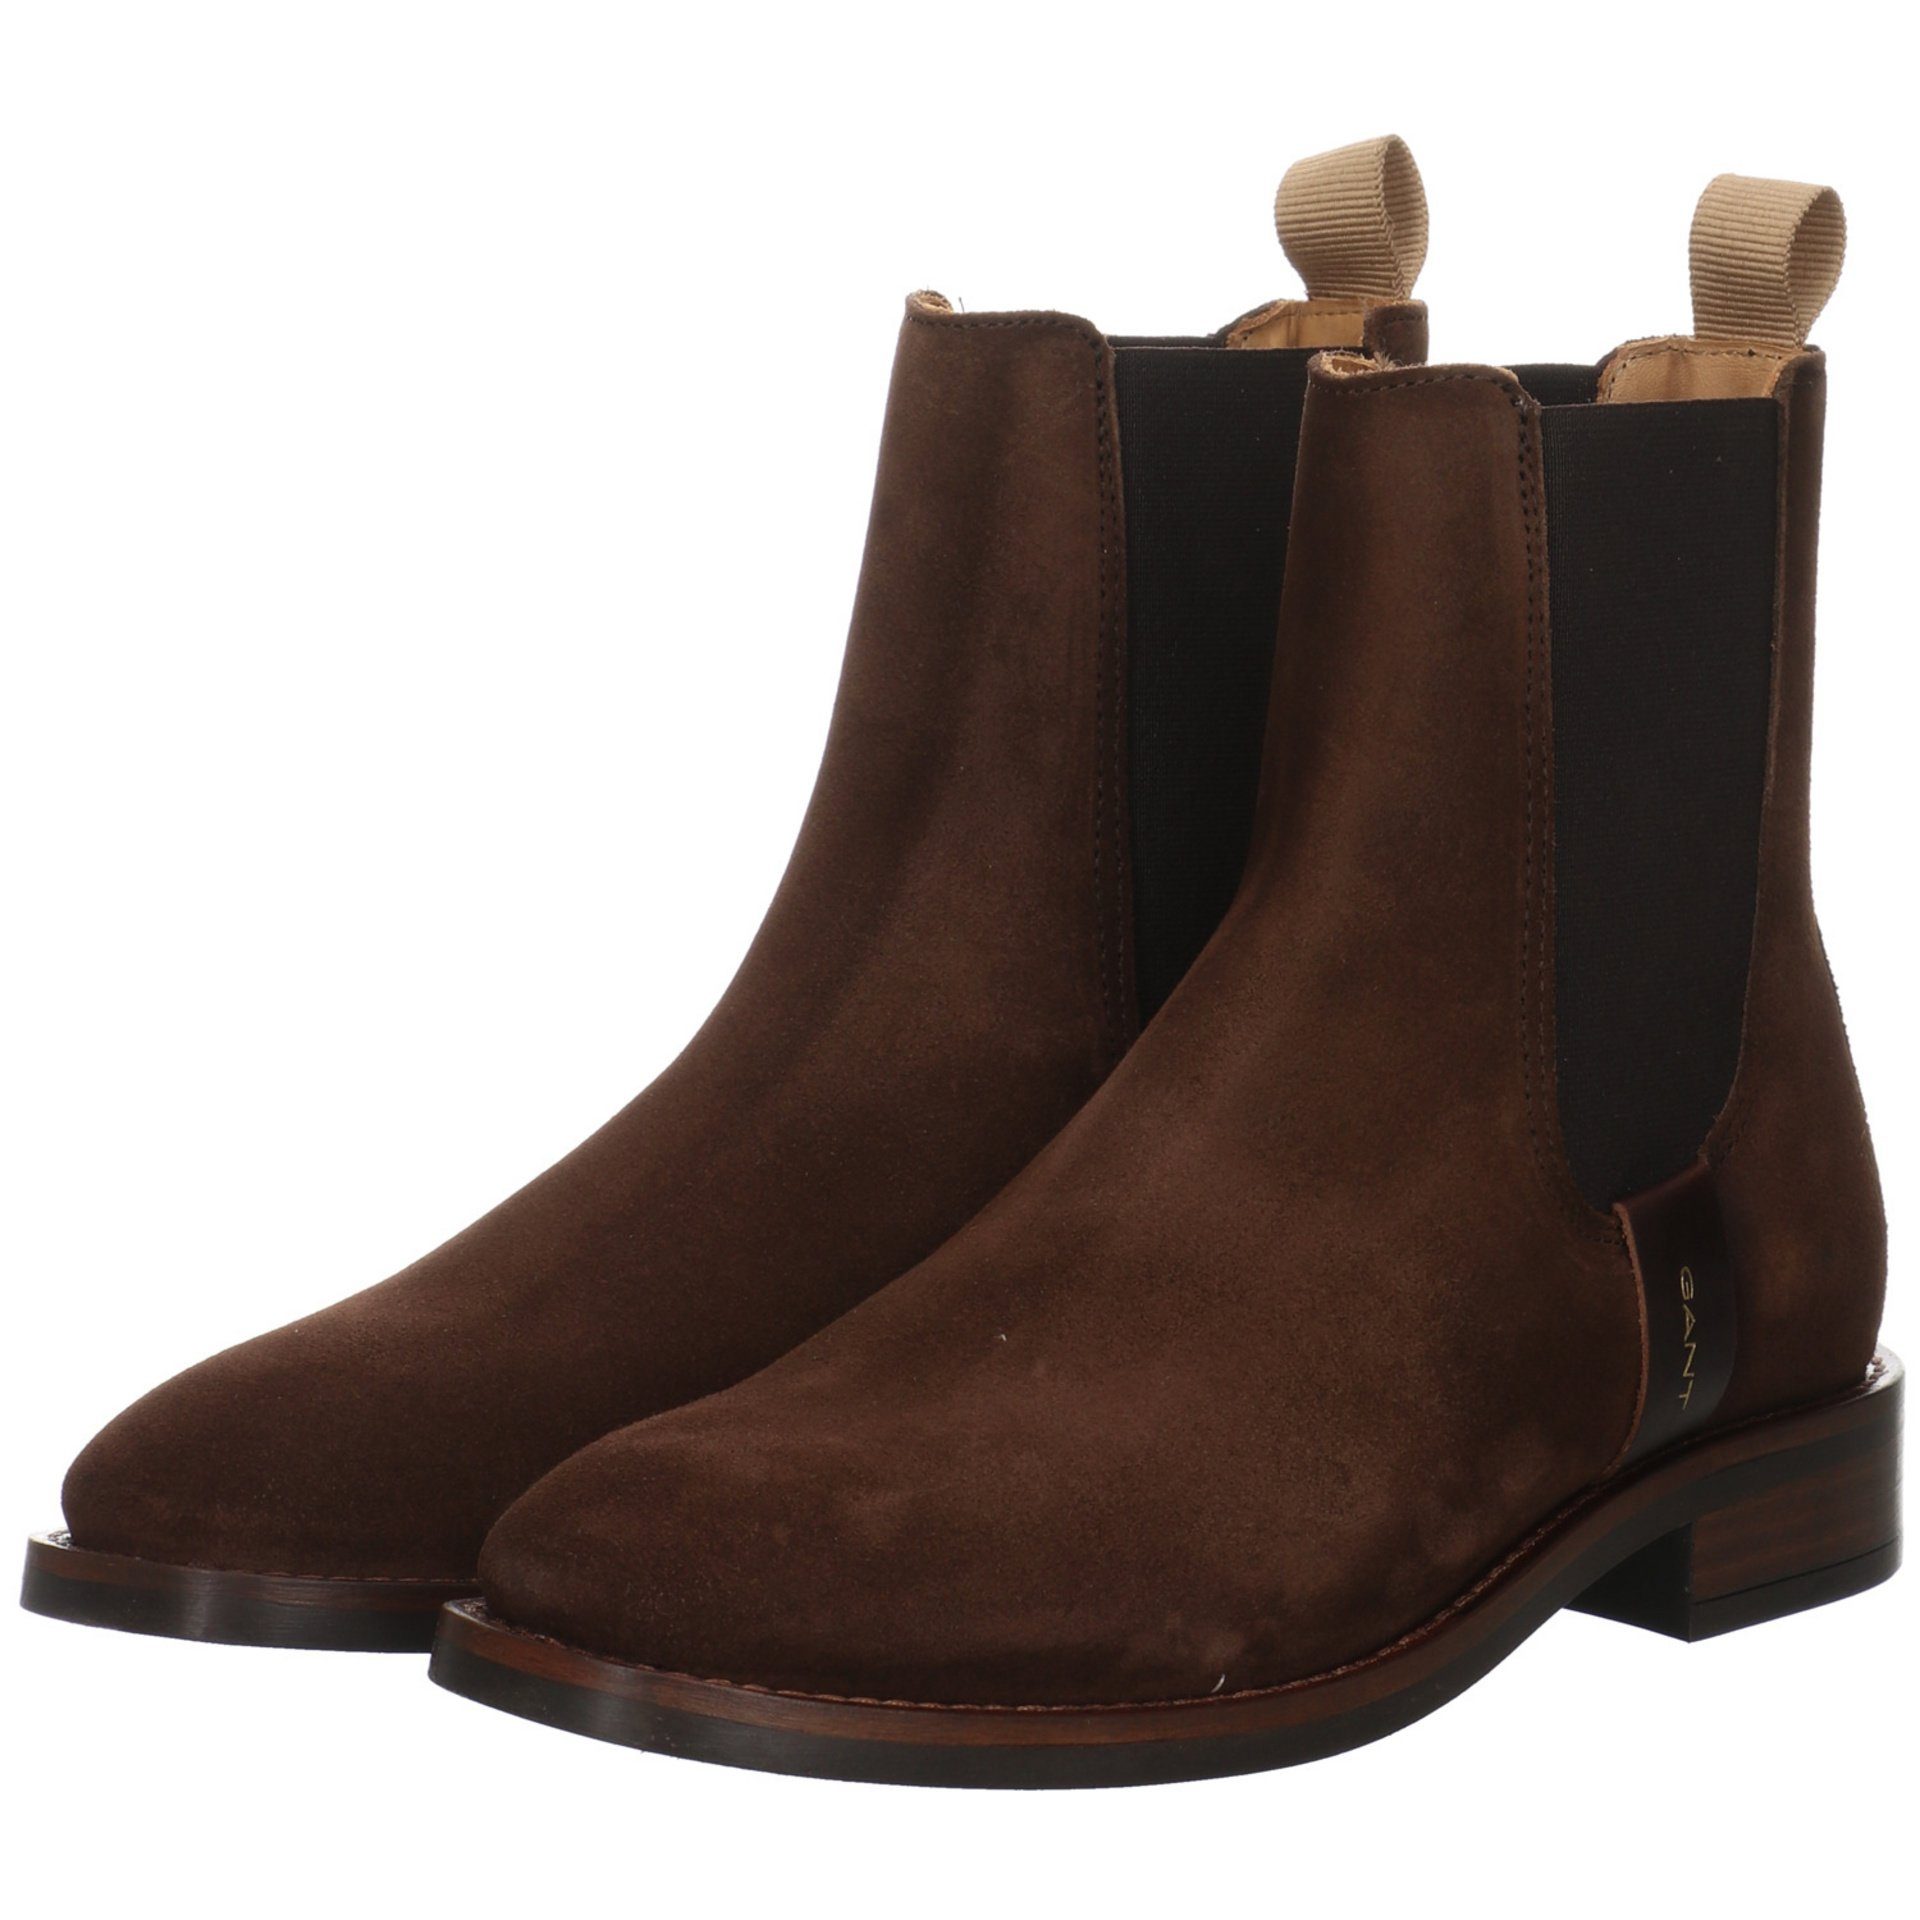 Gant Boots Schuhe Damen Stiefeletten Stiefelette brown Chelsea Leder-/Textilkombination FAYY dark